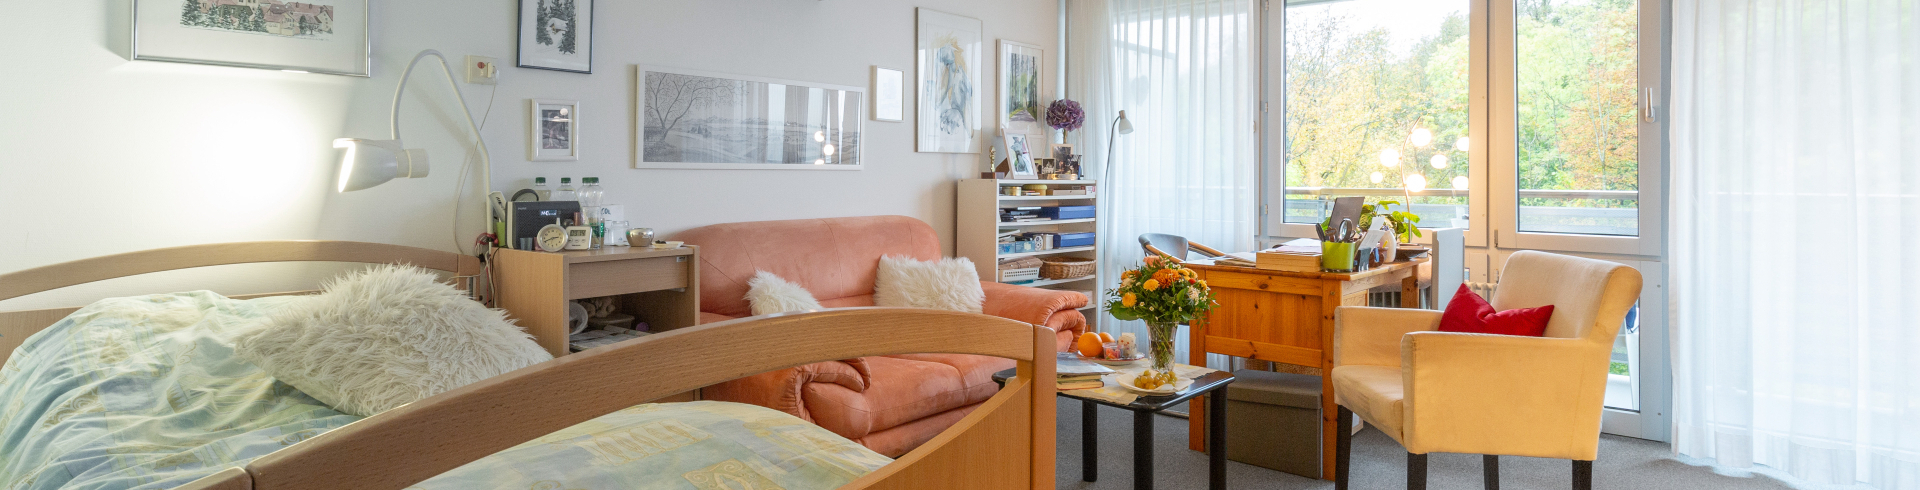 Bewohner/innen-Zimmer im Pflegezentrum im Spitz. Bild: Stadt Kloten (MGE)